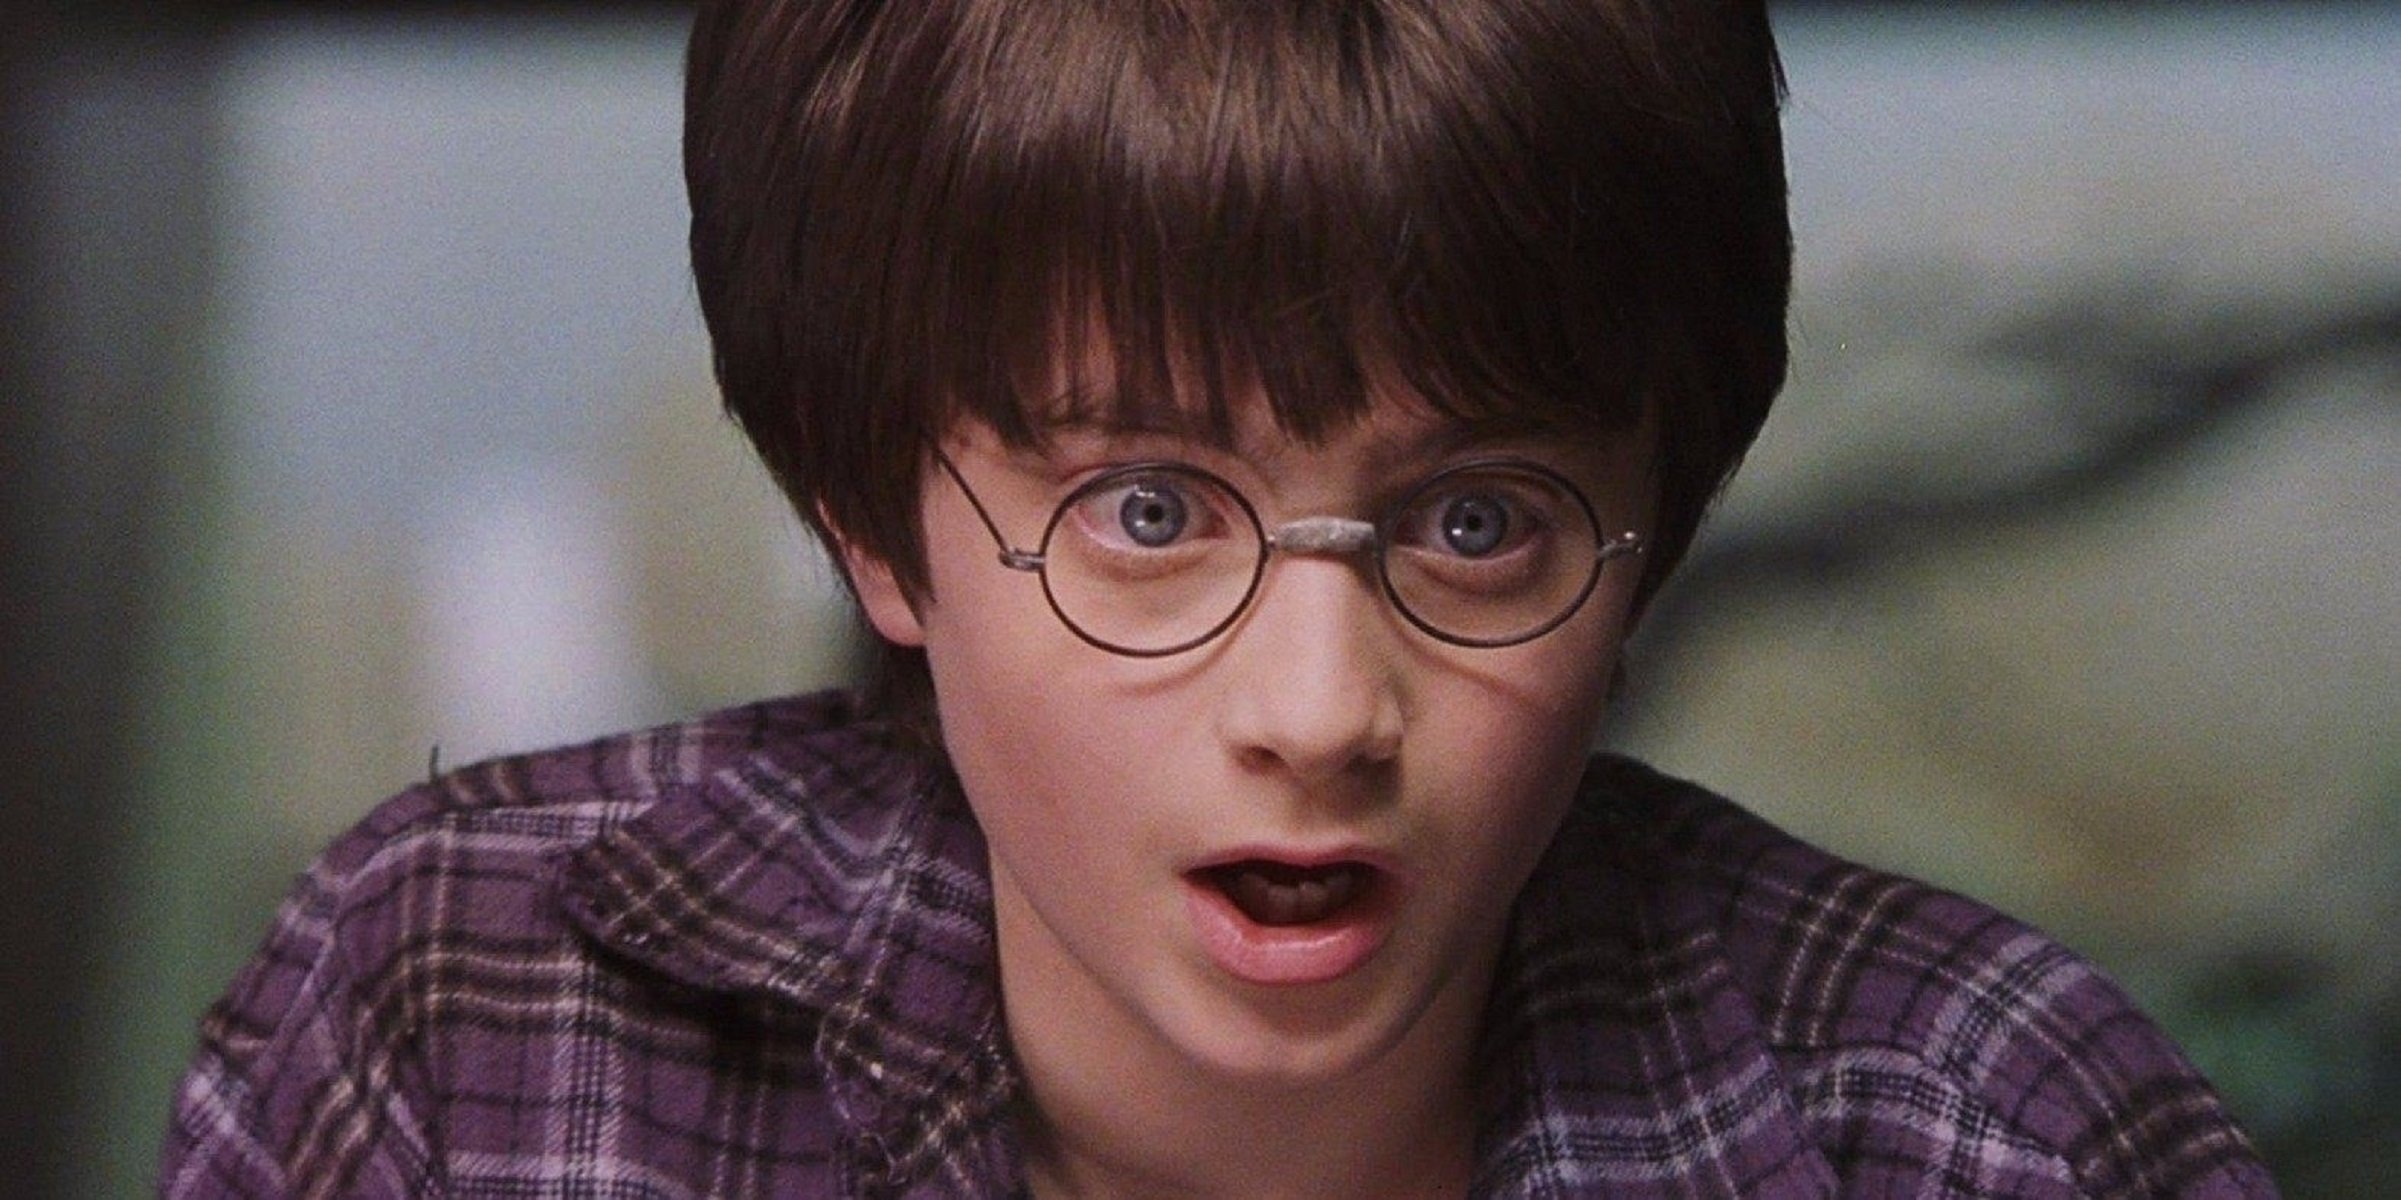 L'escola que prohibeix llegir Harry Potter pels seus encanteris "reals"